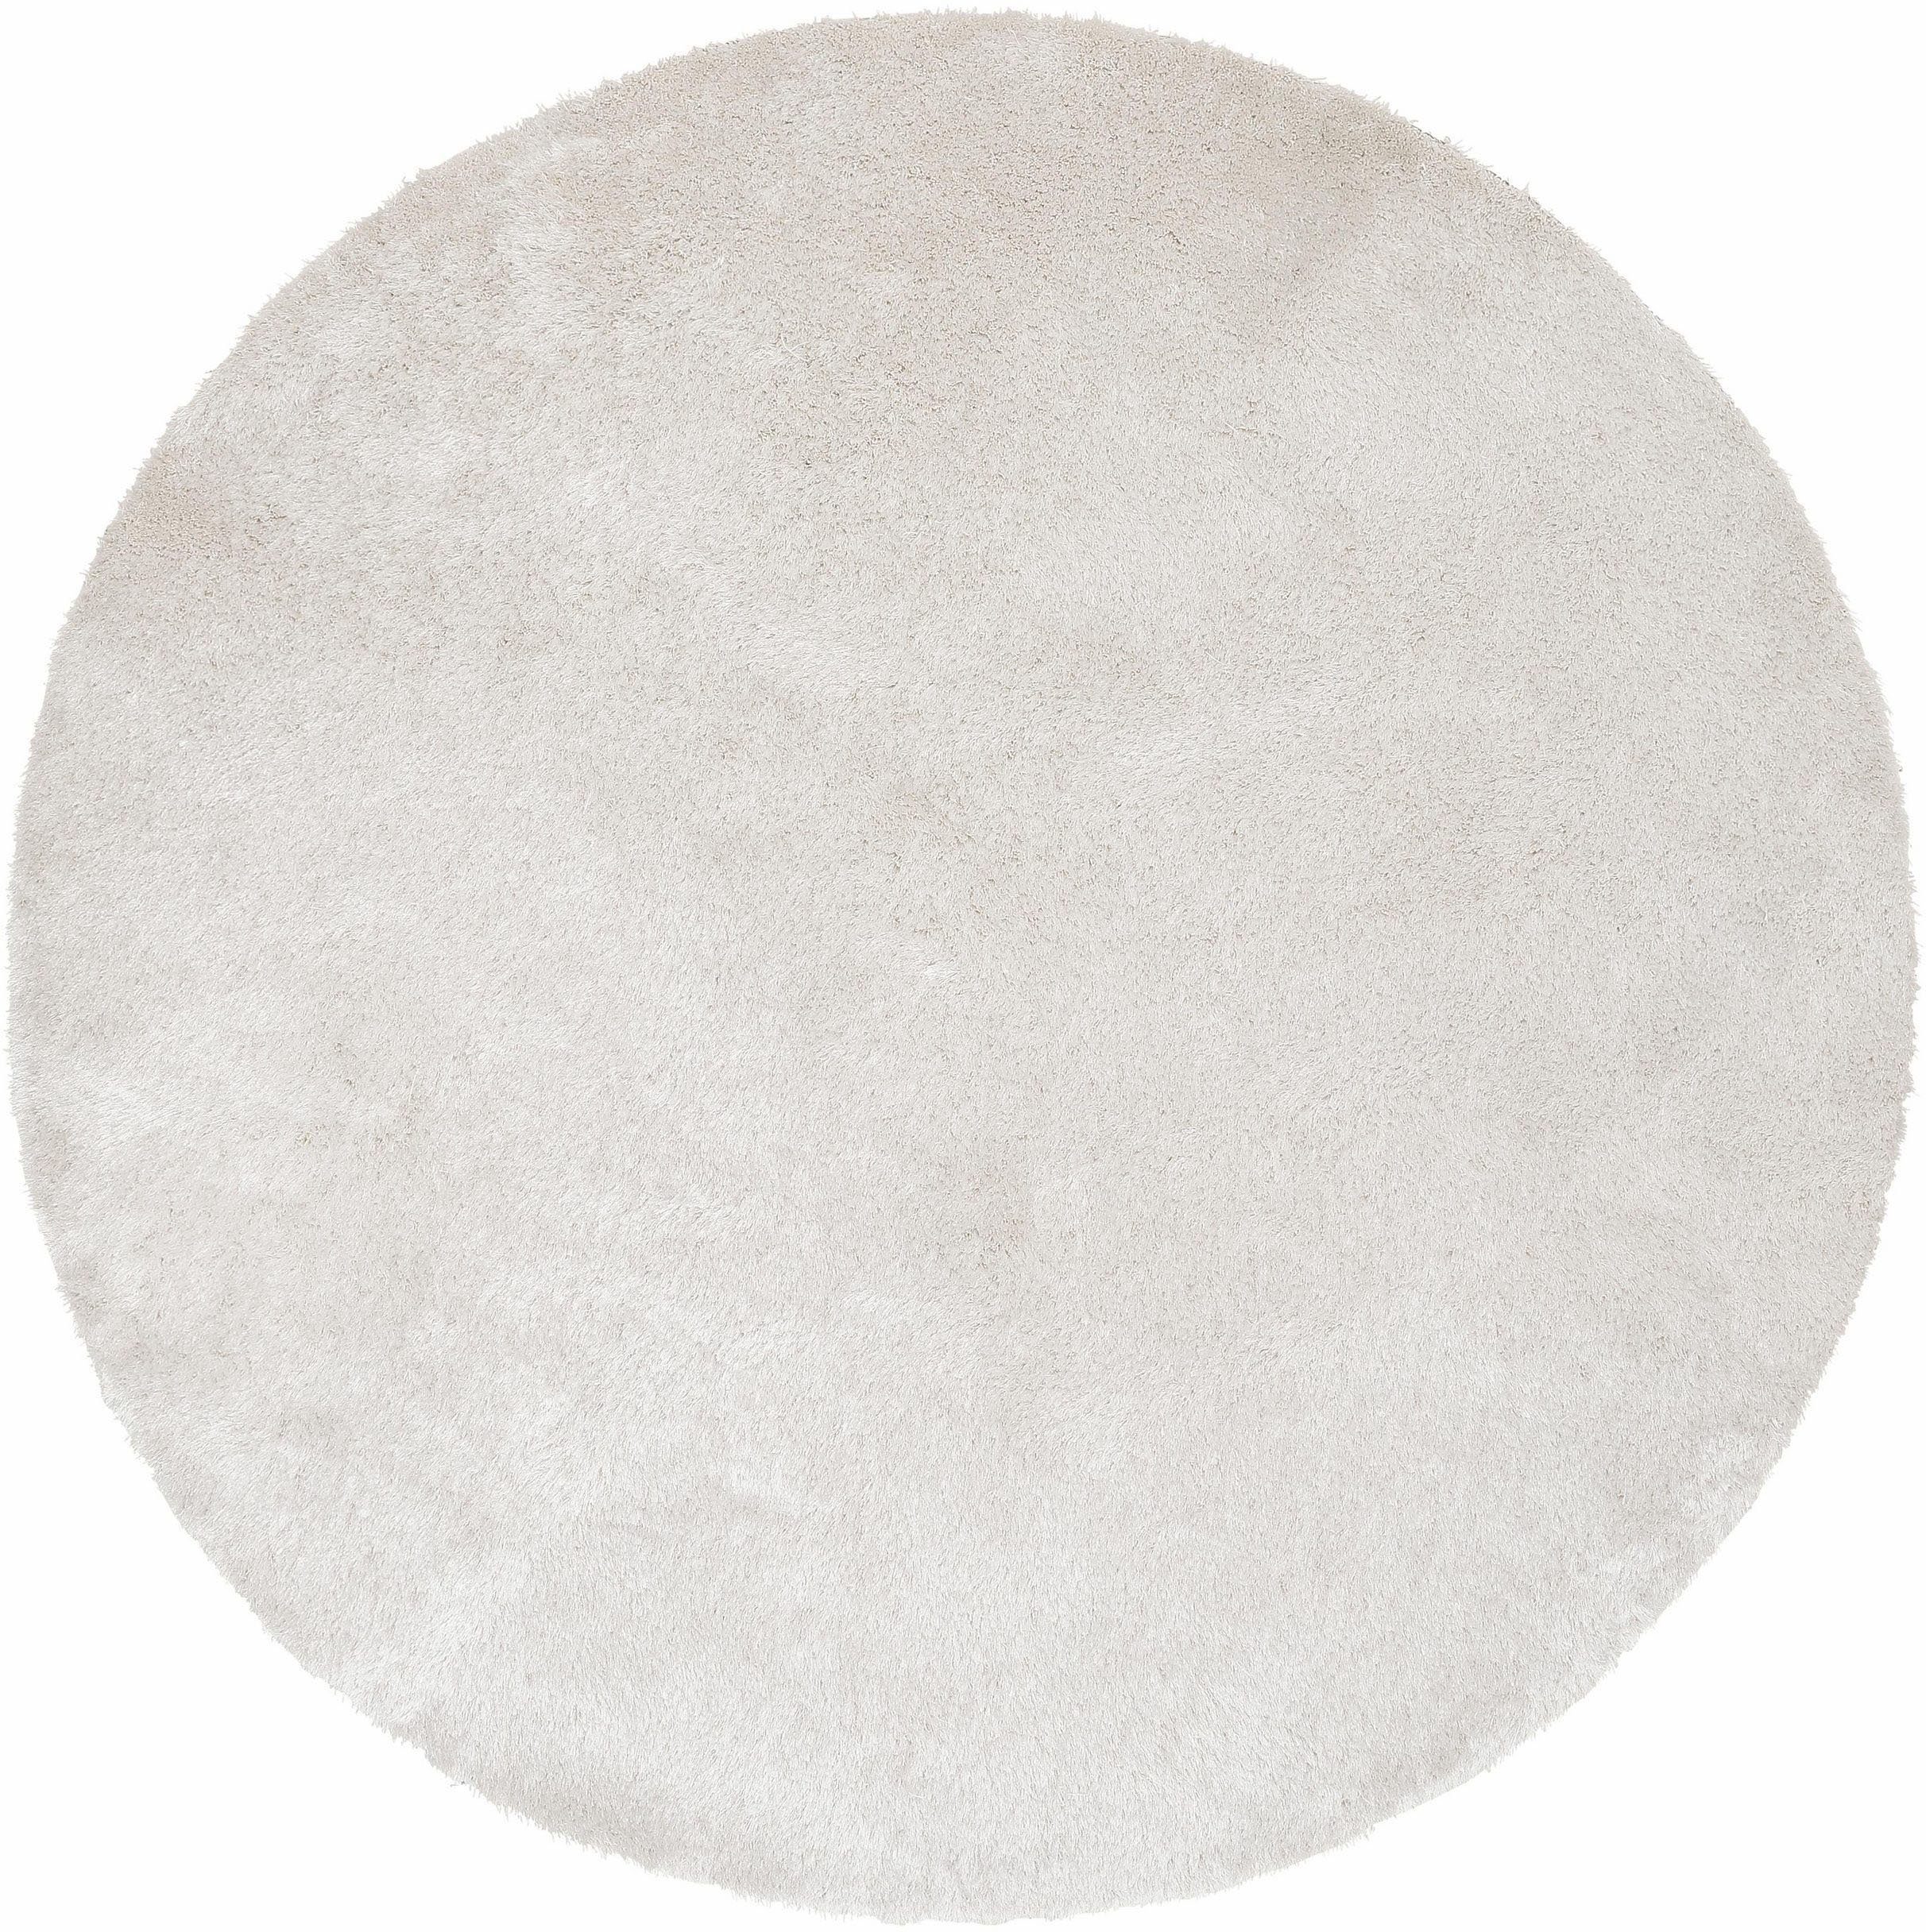 Hochflor-Teppich Deman, Home affaire, rund, Höhe: 25 mm, Uni-Farben, besonders weich und kuschelig durch Mikrofaser, rund weiß | Shaggy-Teppiche